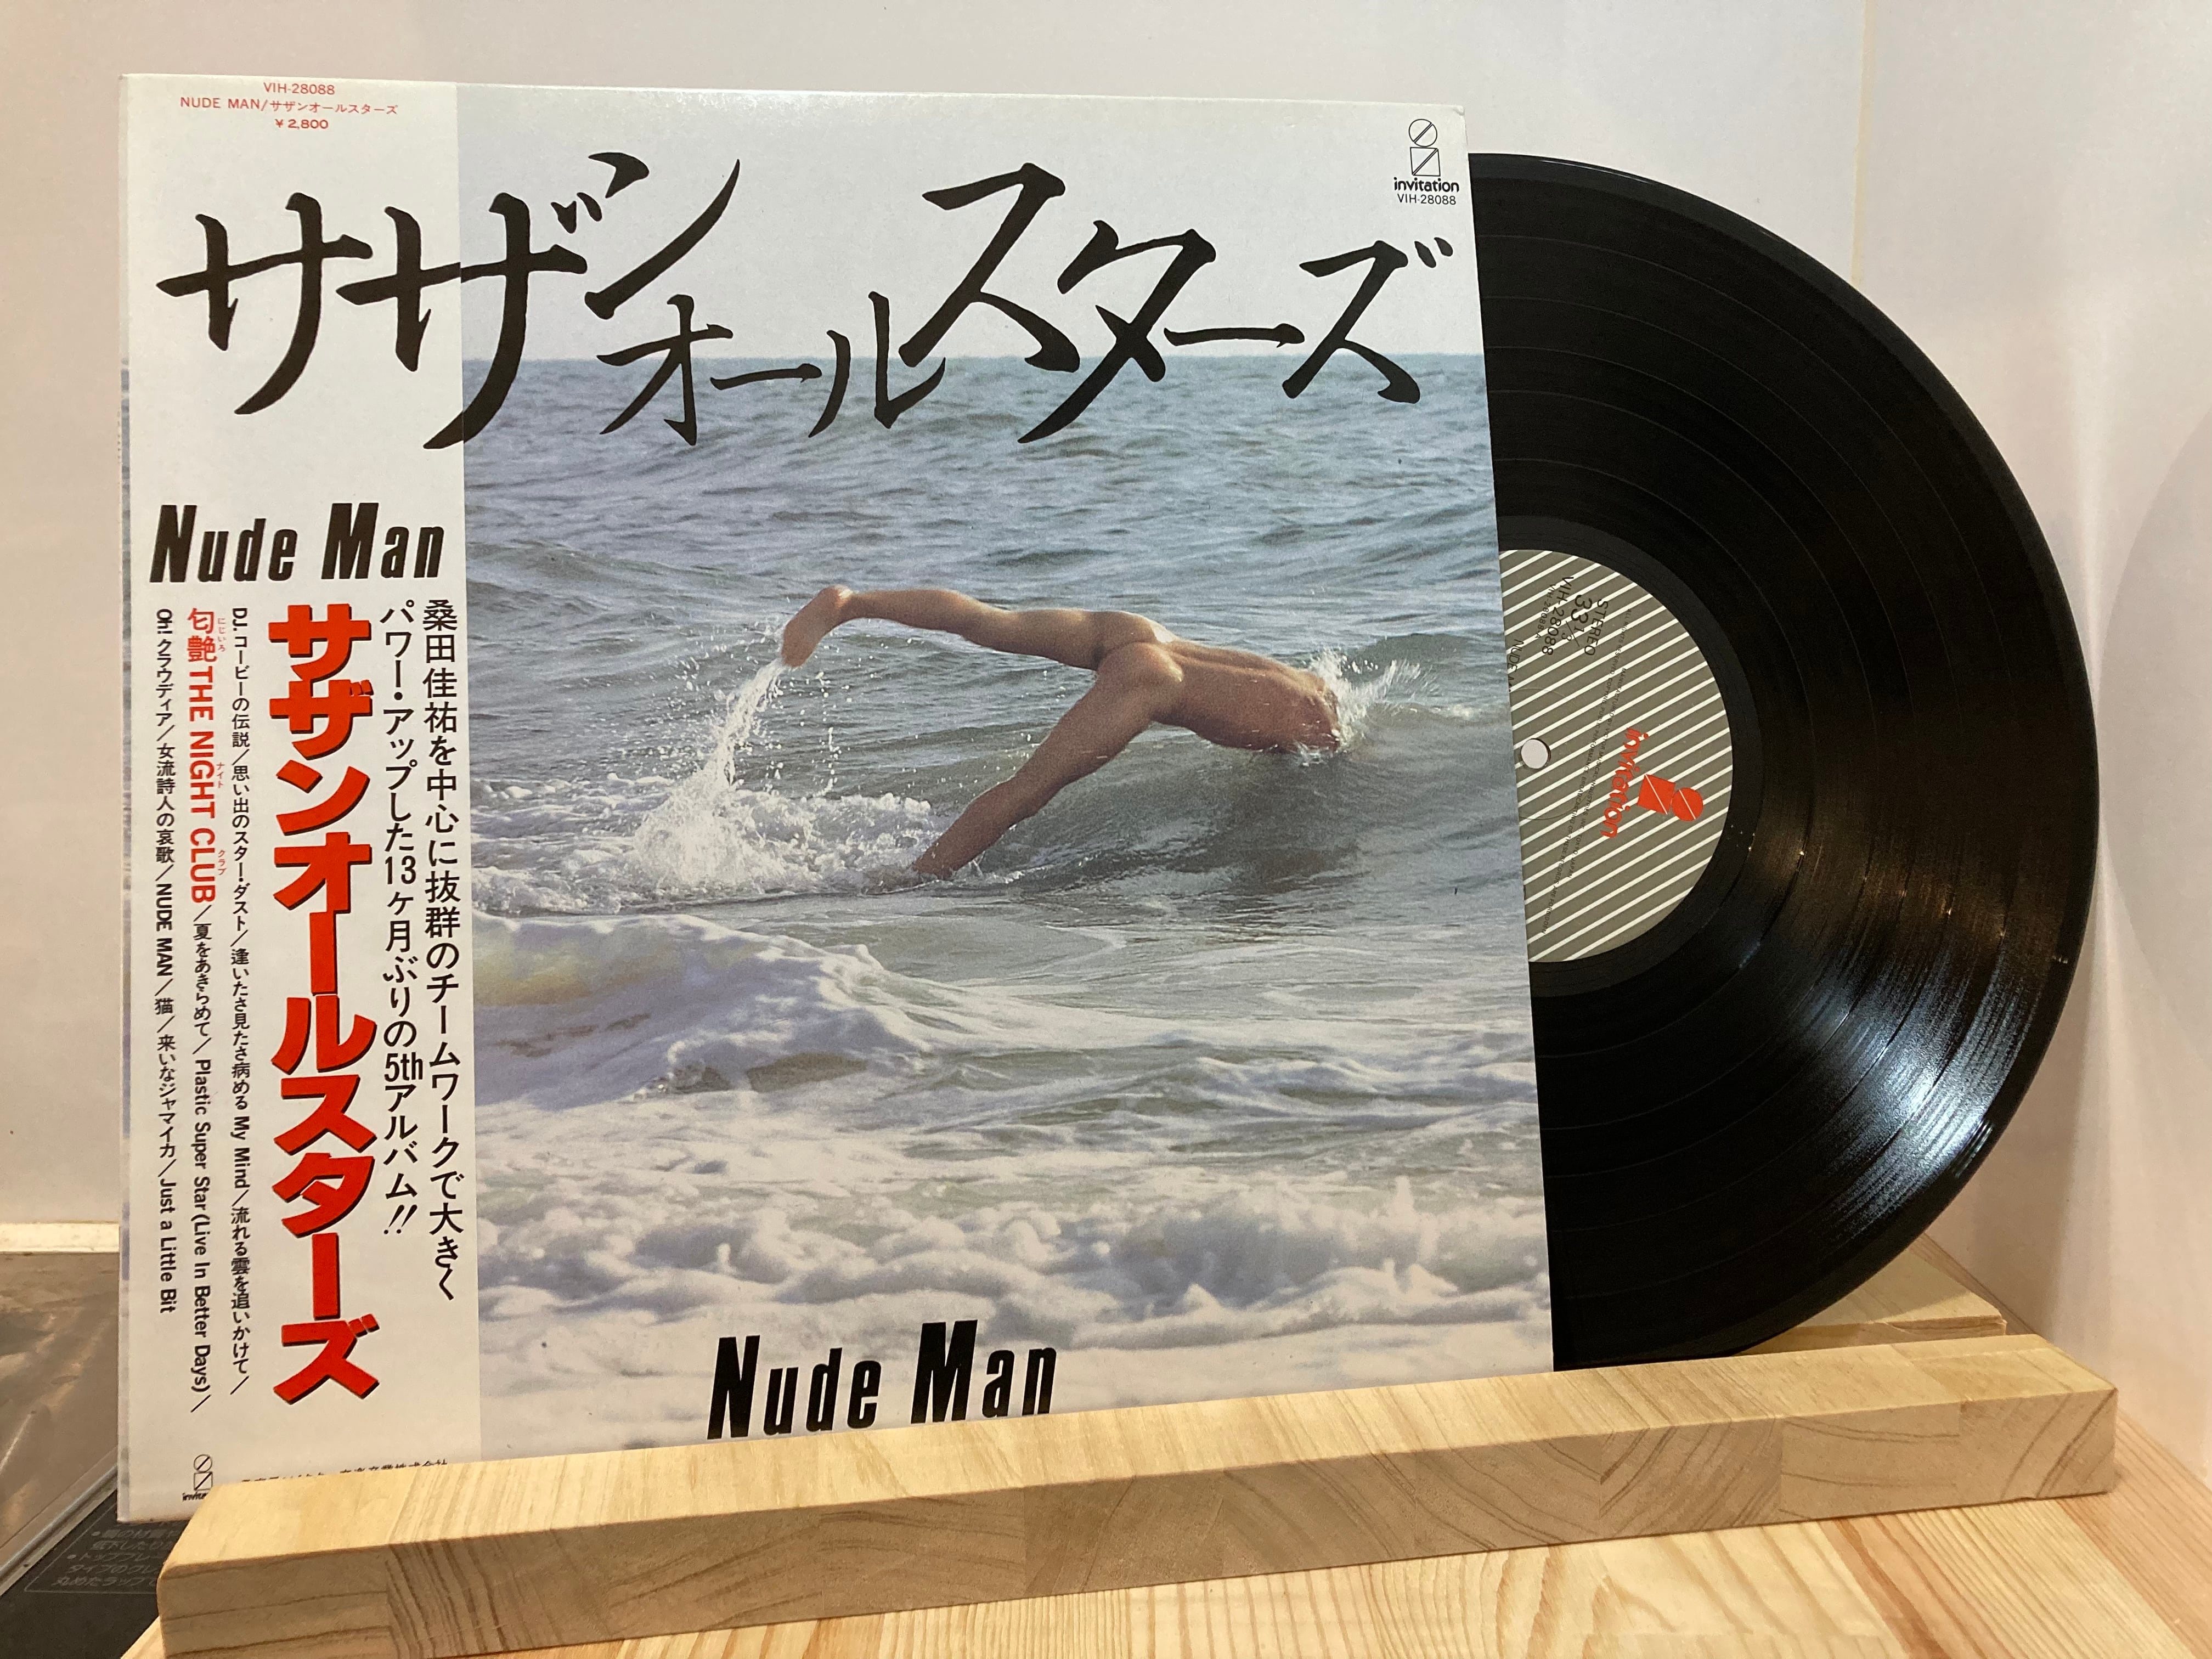 【邦楽レコード】Nude Man サザンオールスターズ 来いなジャマイカ 昭和音楽